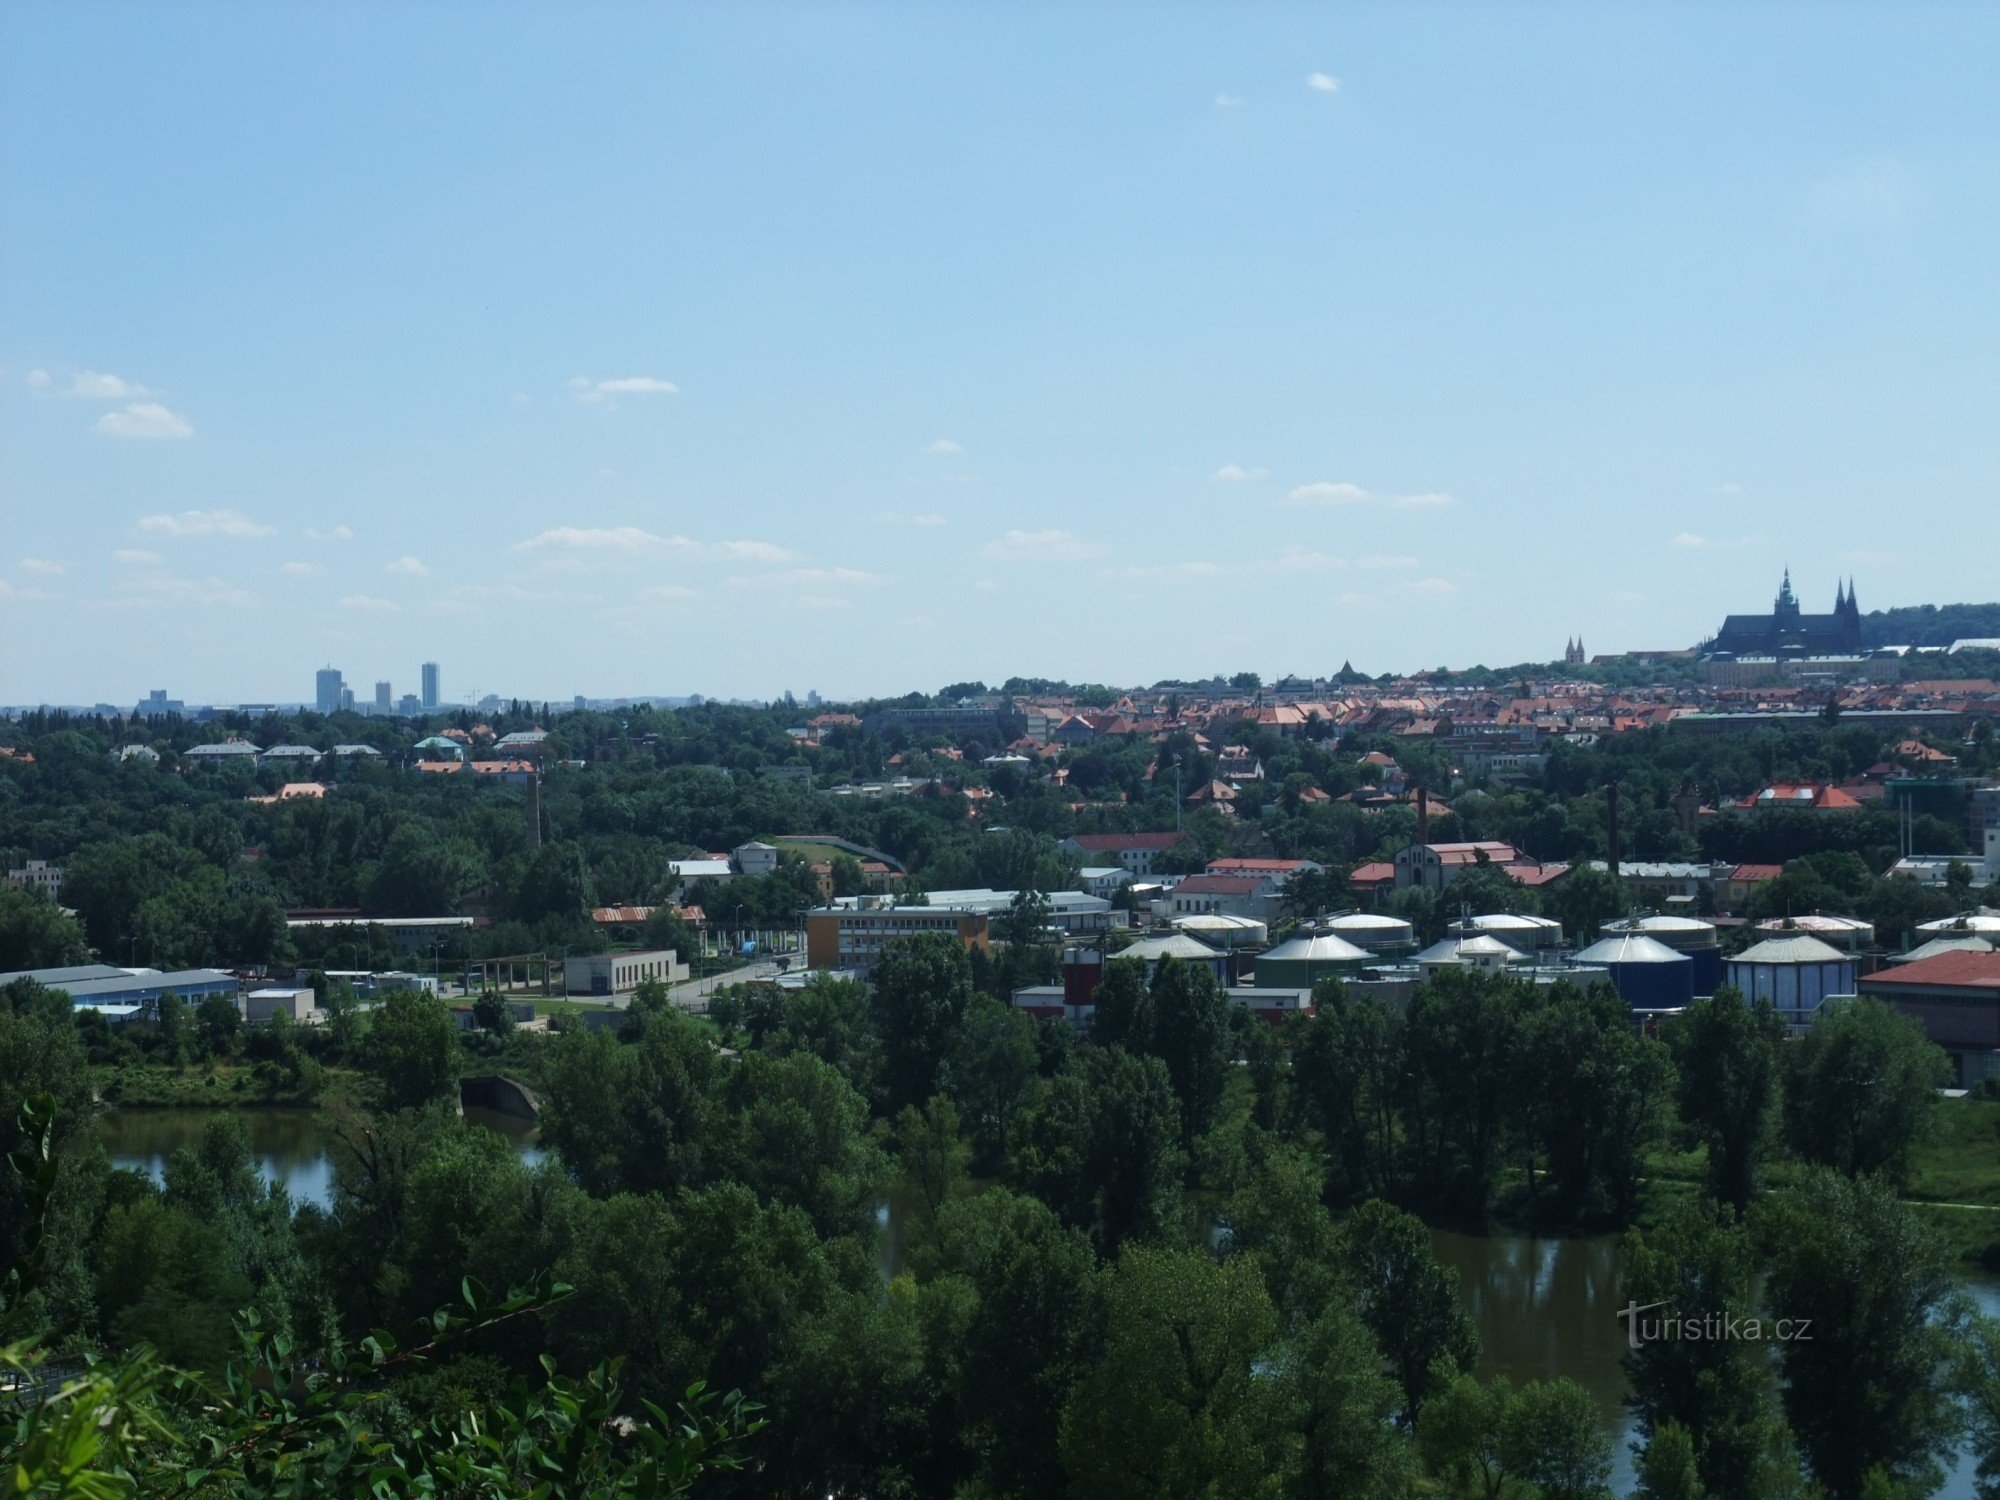 Πύργος παρατήρησης Obora στο ζωολογικό κήπο της Πράγας